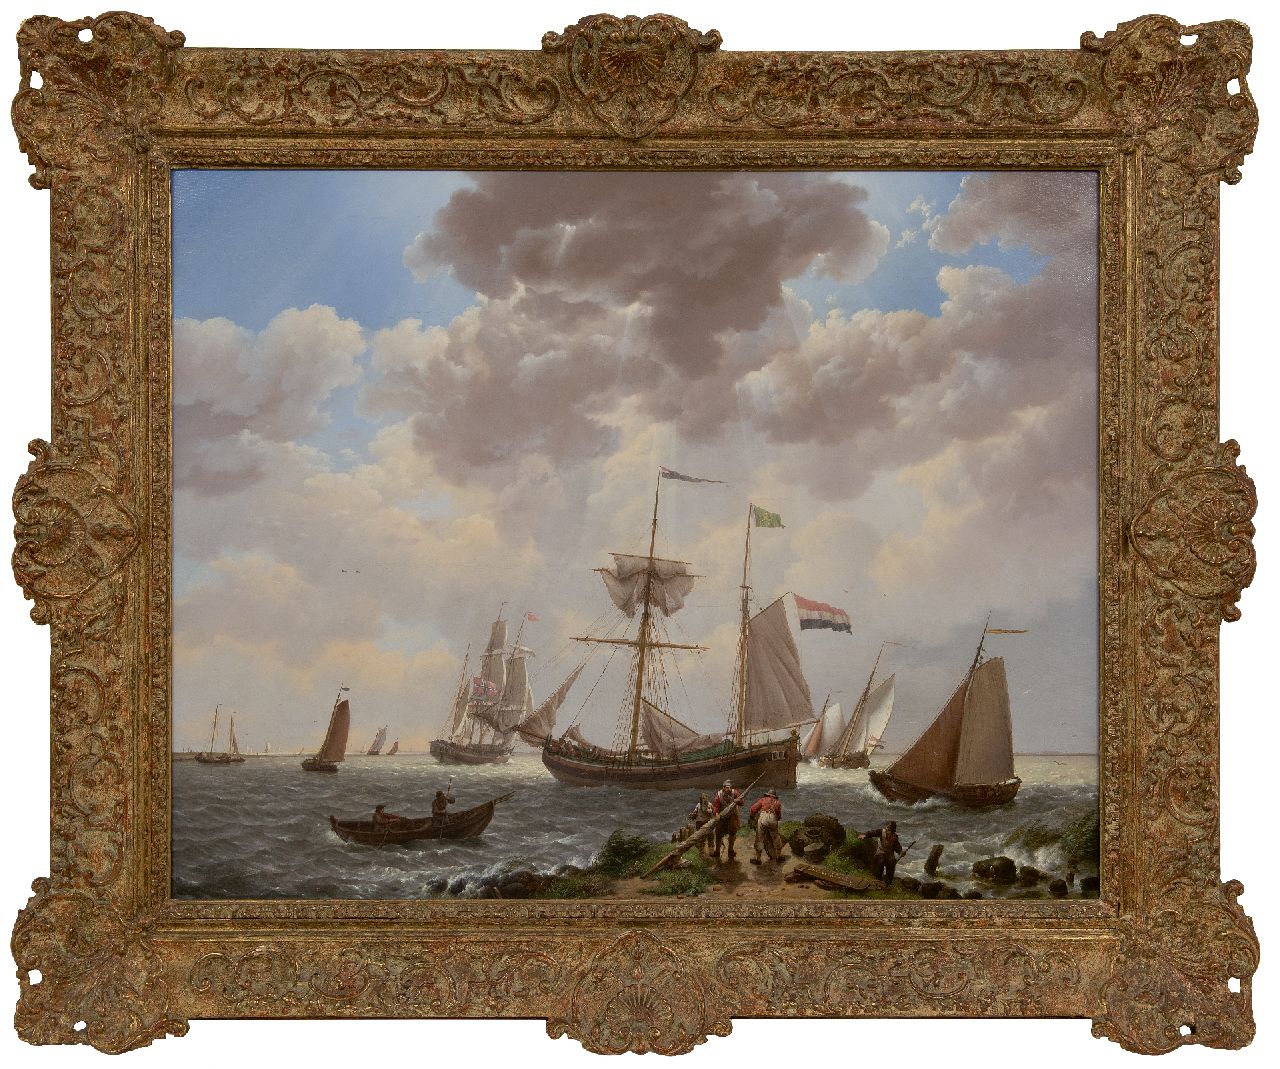 Koekkoek J.H.  | Johannes Hermanus Koekkoek | Schilderijen te koop aangeboden | Laverende schepen voor de kust, olieverf op doek 57,3 x 72,0 cm, gesigneerd rechtsonder en gedateerd 1831